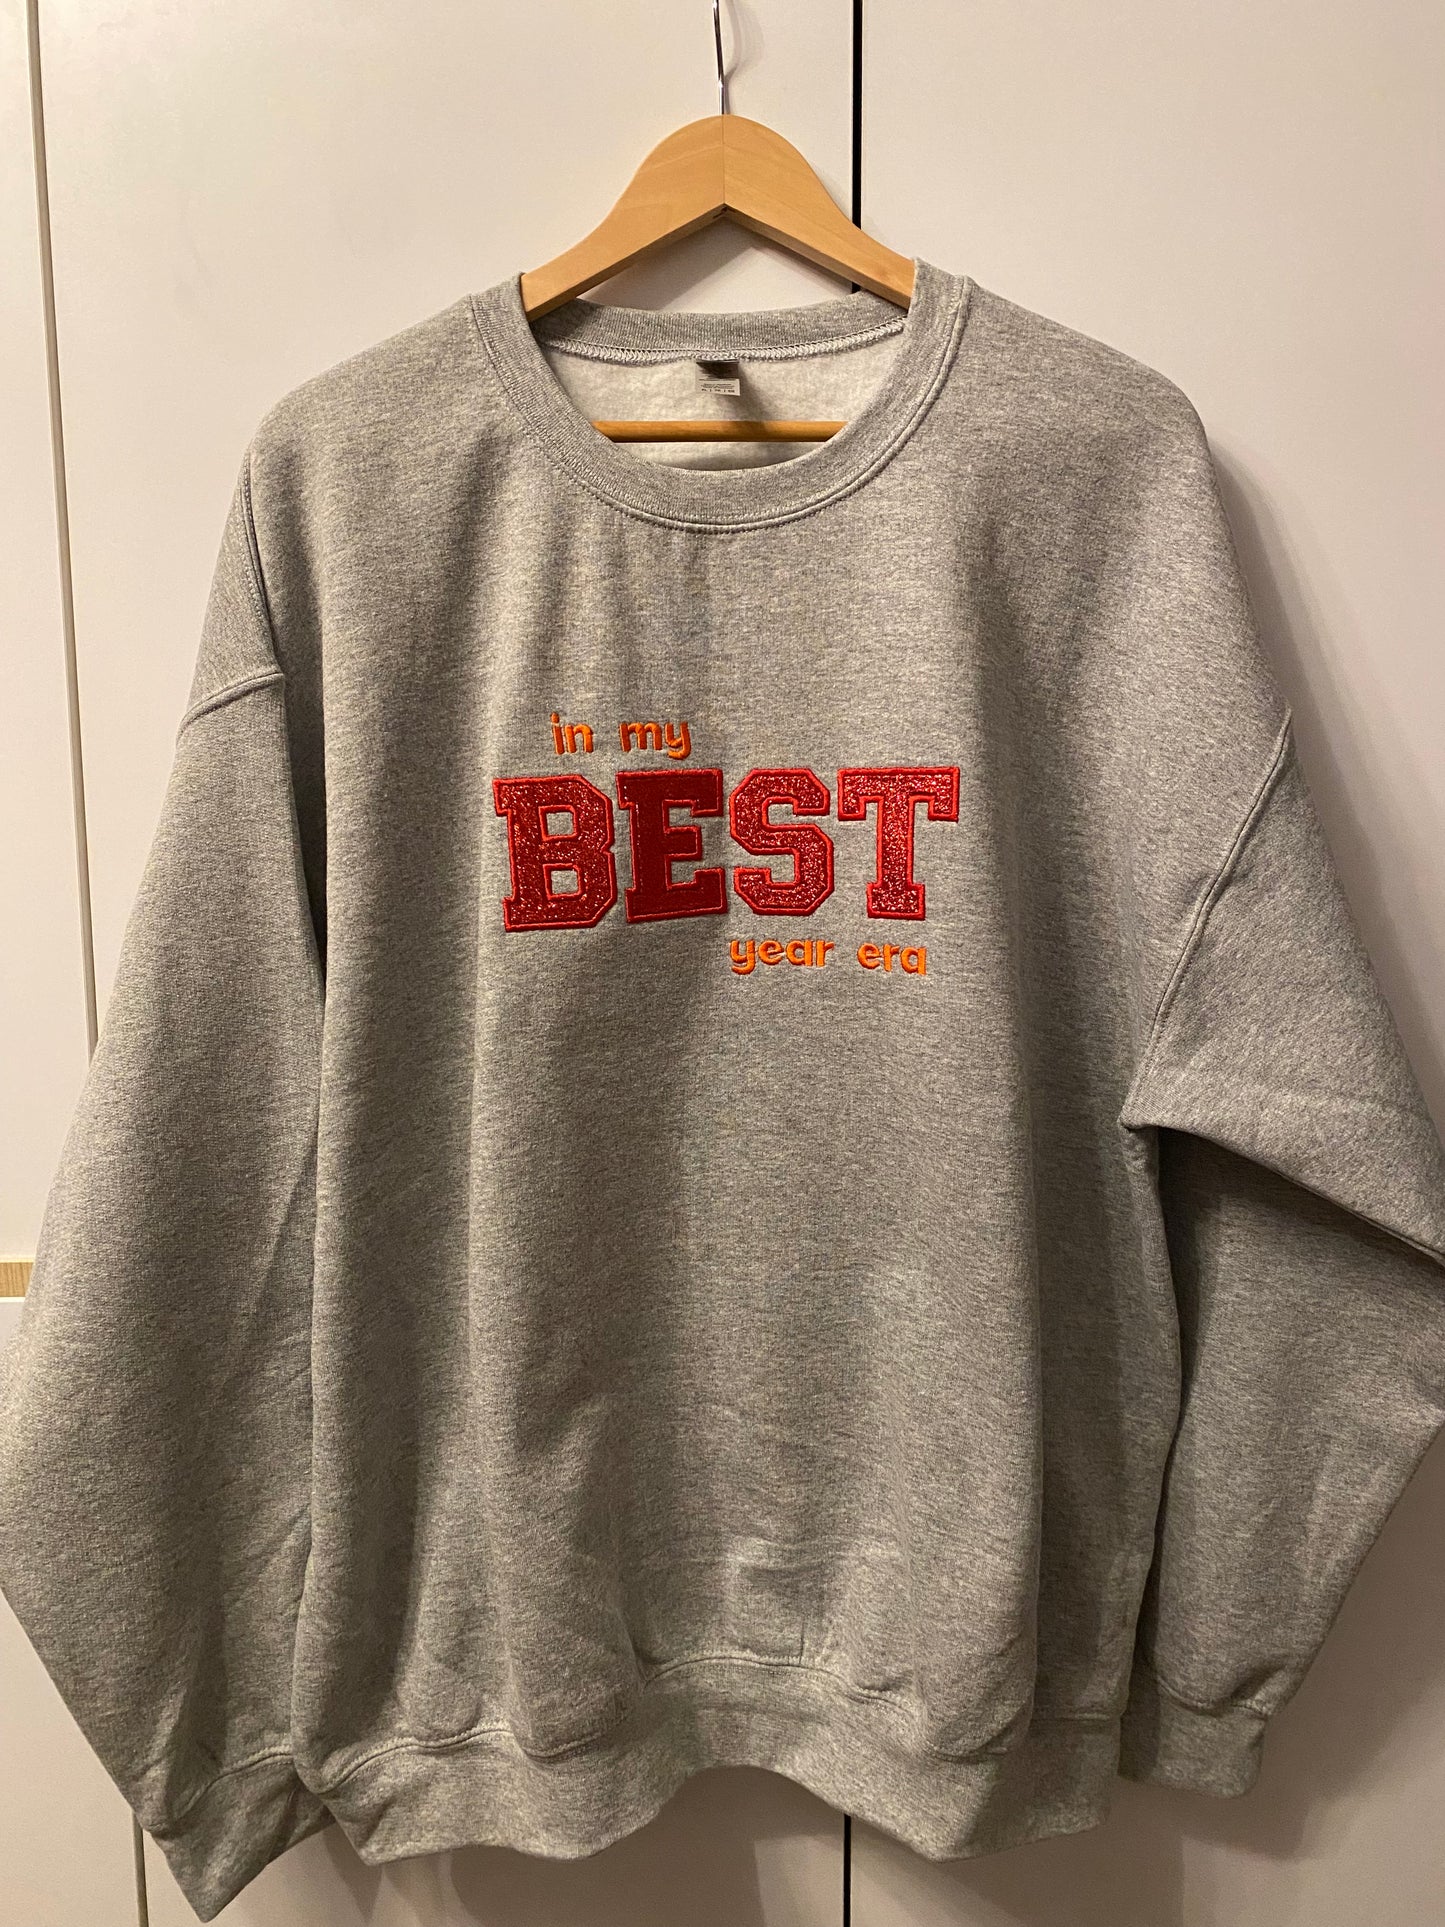 Sweatshirt "in my BEST year era"